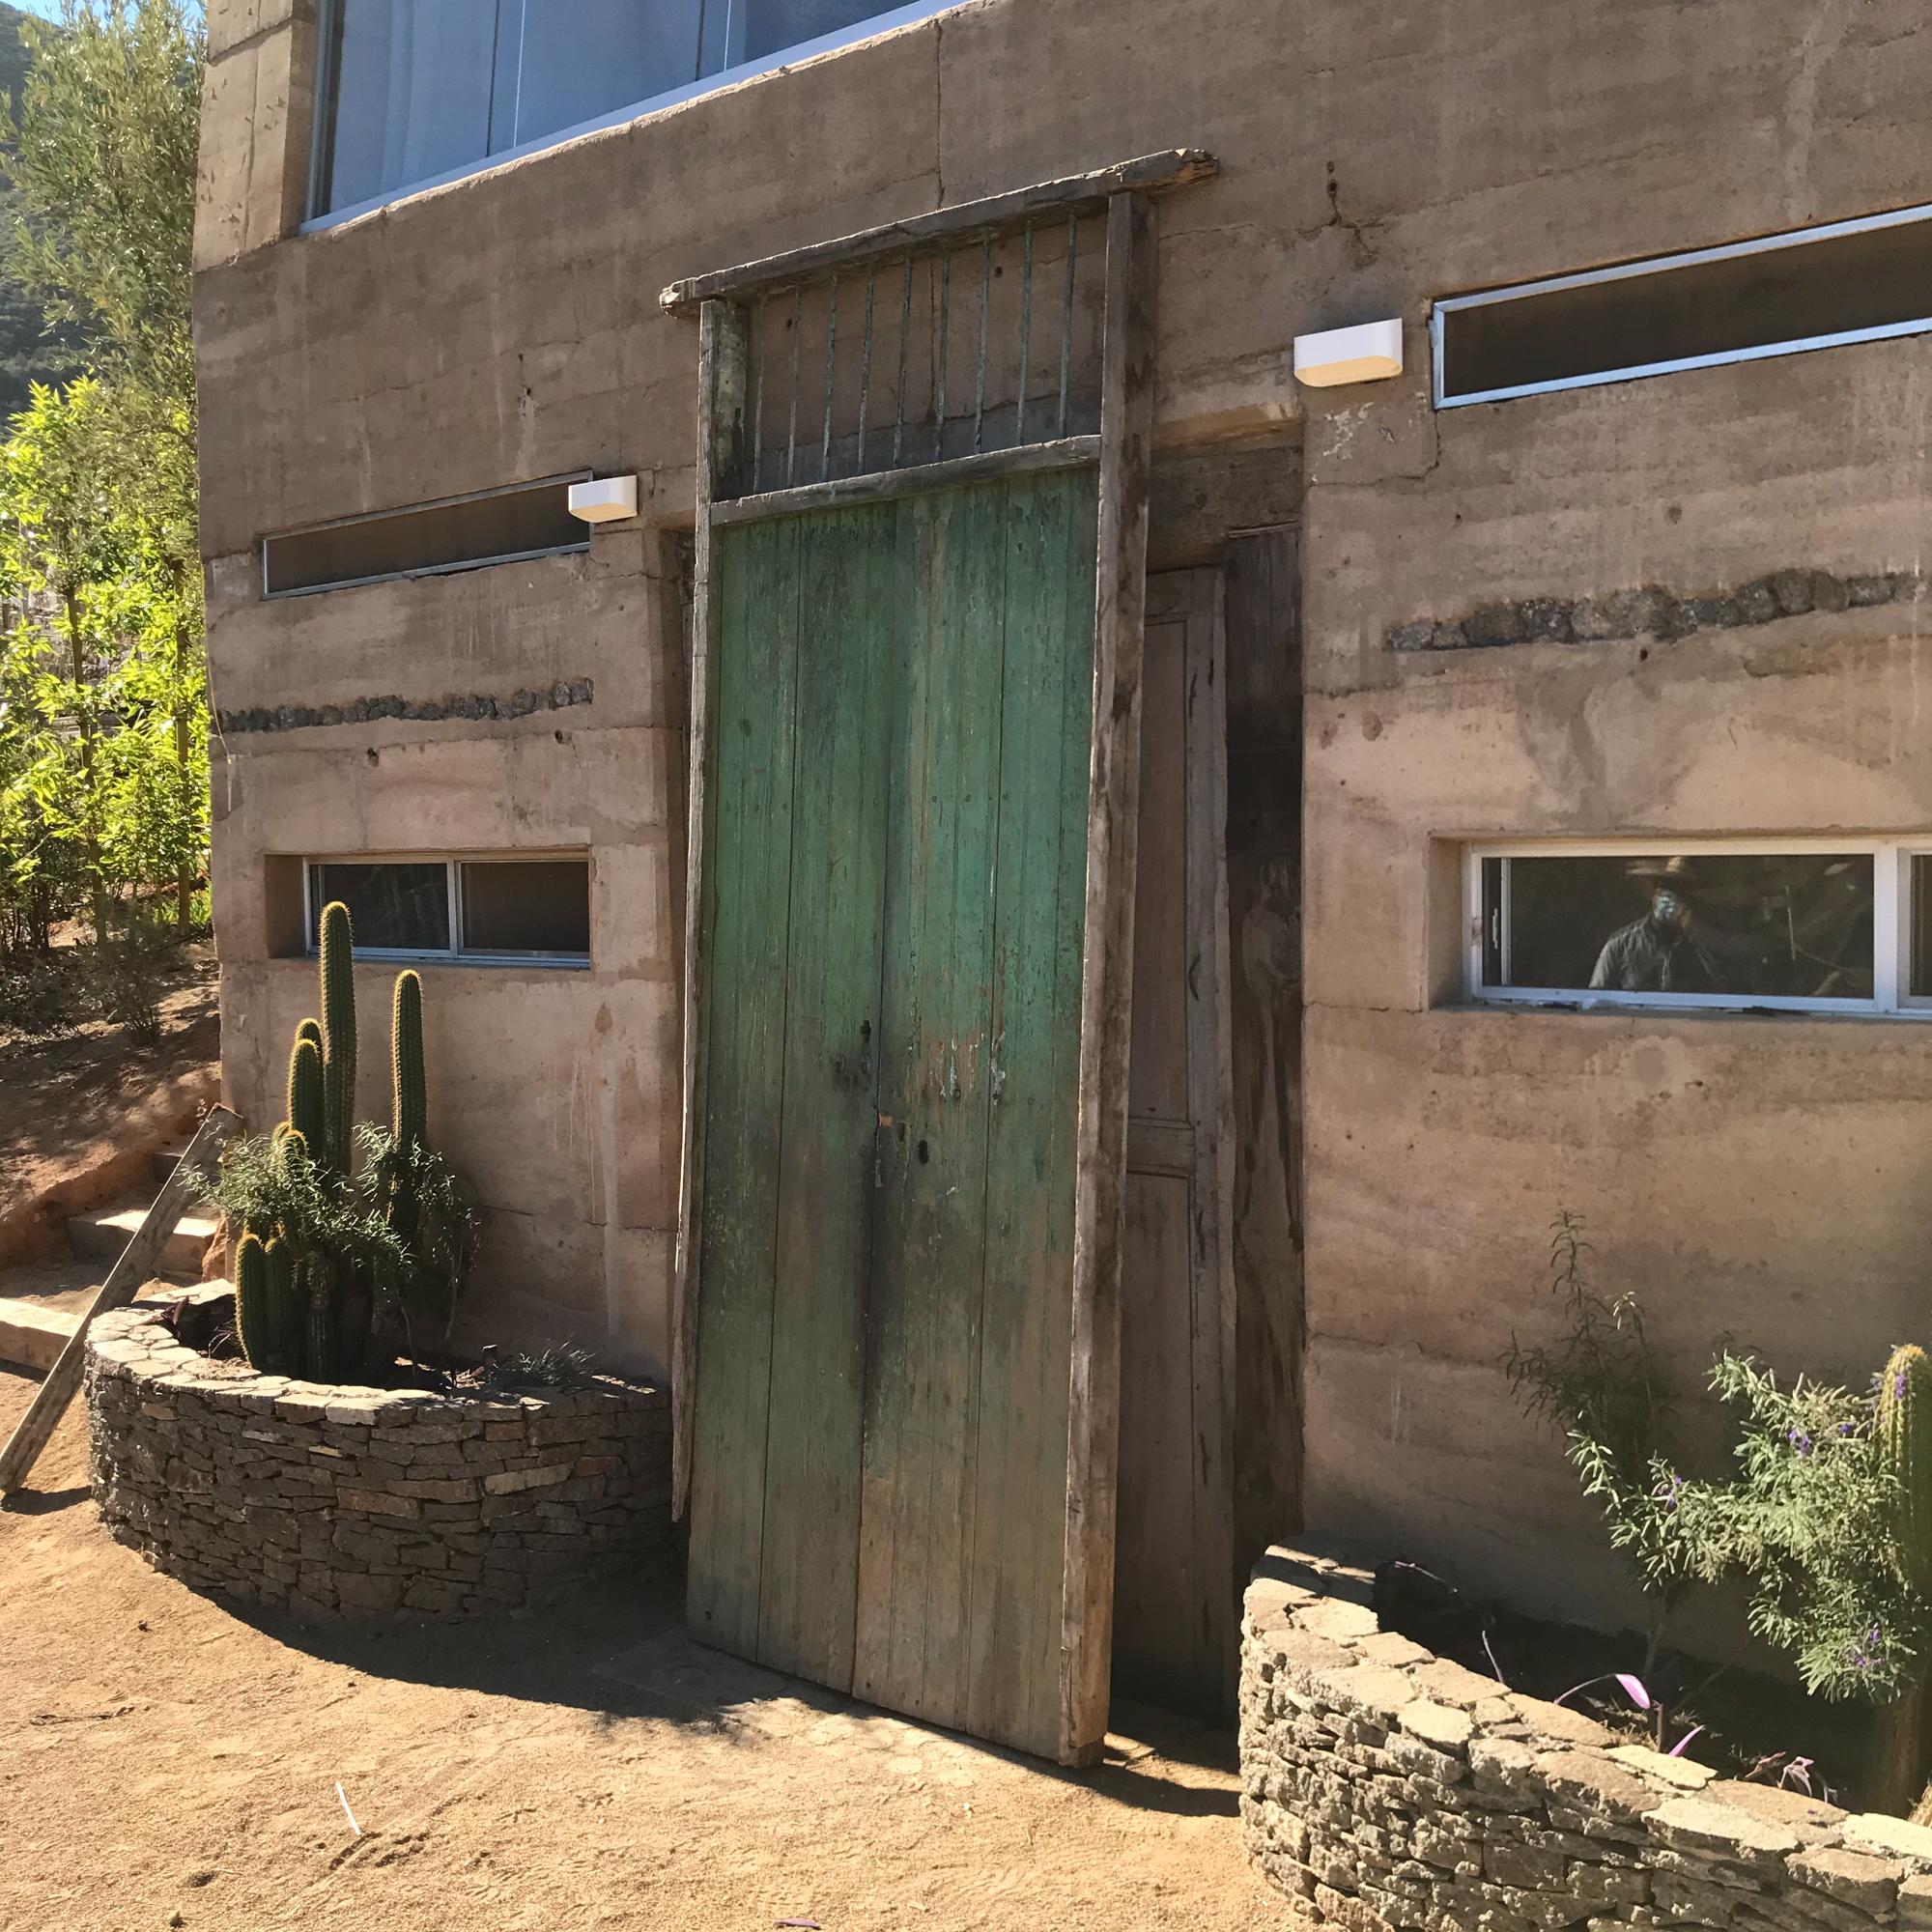 1920s Old Hacienda Rustic Green Barn Doors made in Solid Slab Mesquite Wood Jalisco Mexico 
Fabriqué à la main par des artisans mexicains
115,5 de haut x 44,75 de large x 3,75 d'épaisseur (cadre en bois), portes 41 de large x 94,5 de haut.
Une pièce